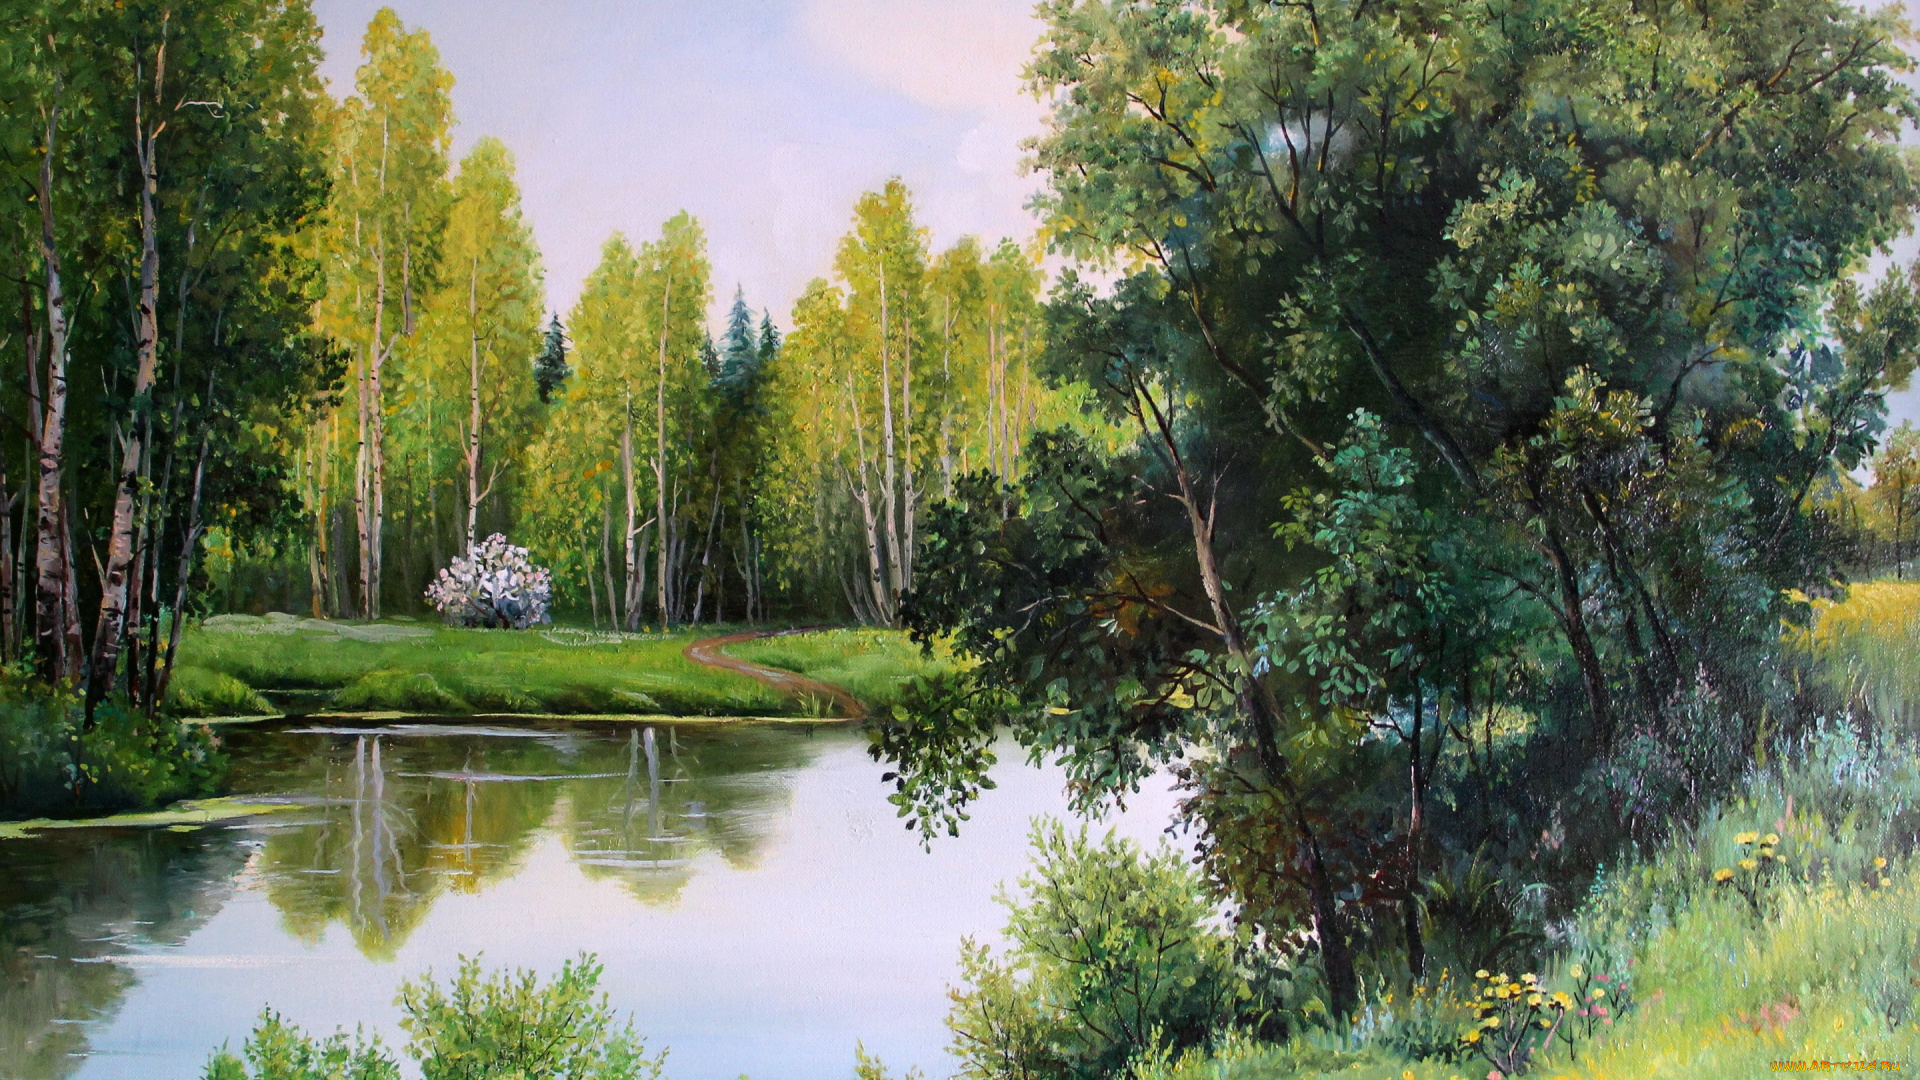 рисованное, живопись, gorbatenko, полотно, рисунок, лес, речка, деревья, берег, лодка, кусты, пейзаж, природа, may, greens